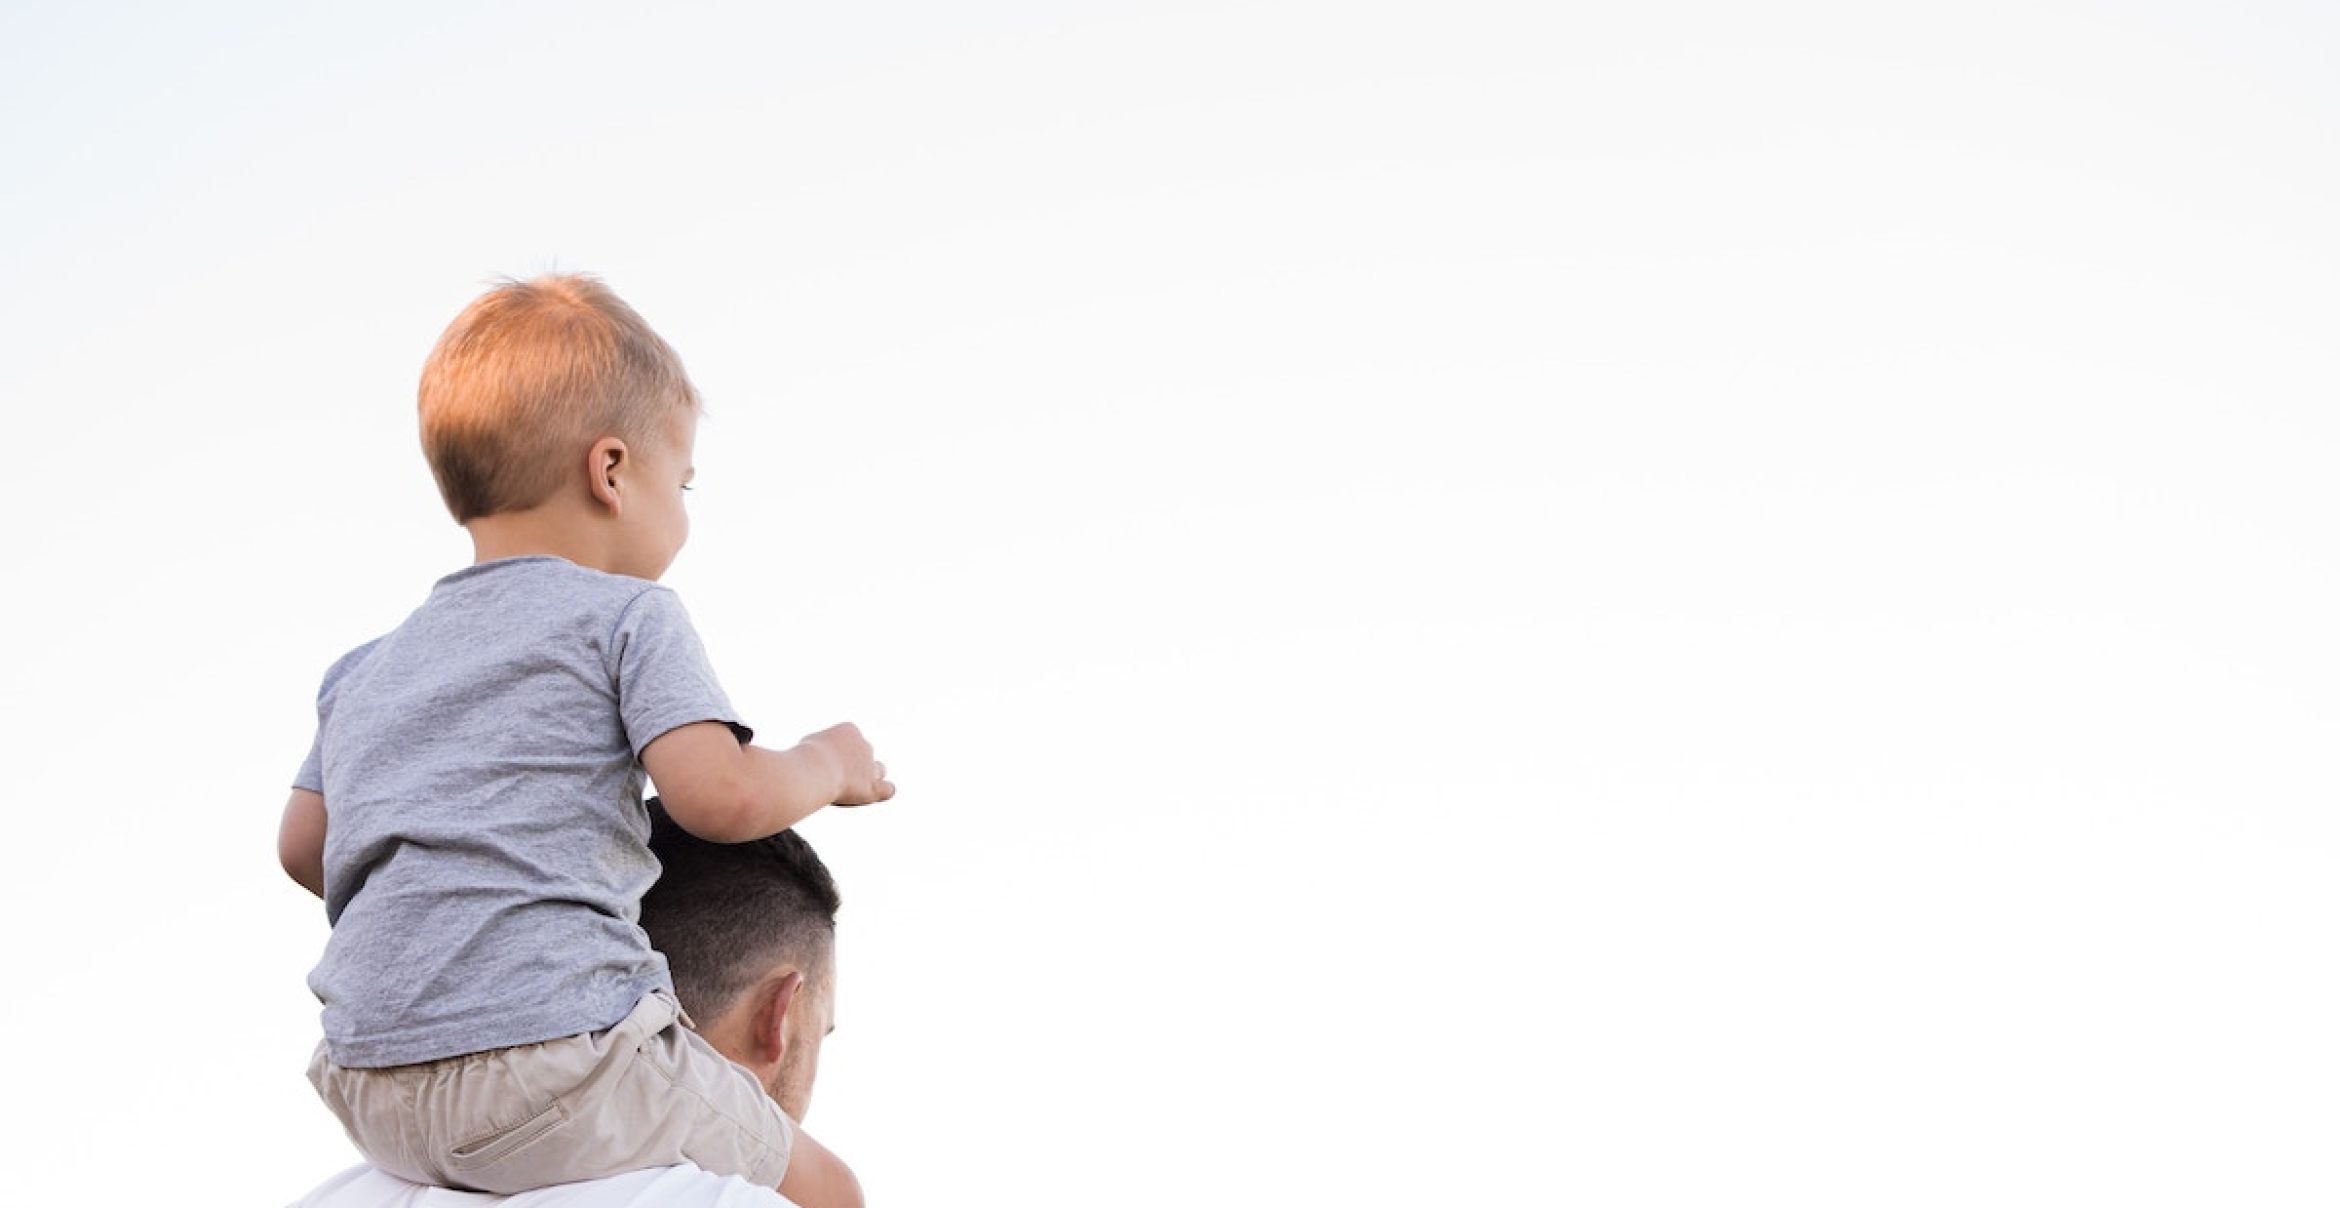 Erstes DAX40-Unternehmen: Henkel führt 8 Wochen bezahlte Elternzeit für Väter ein